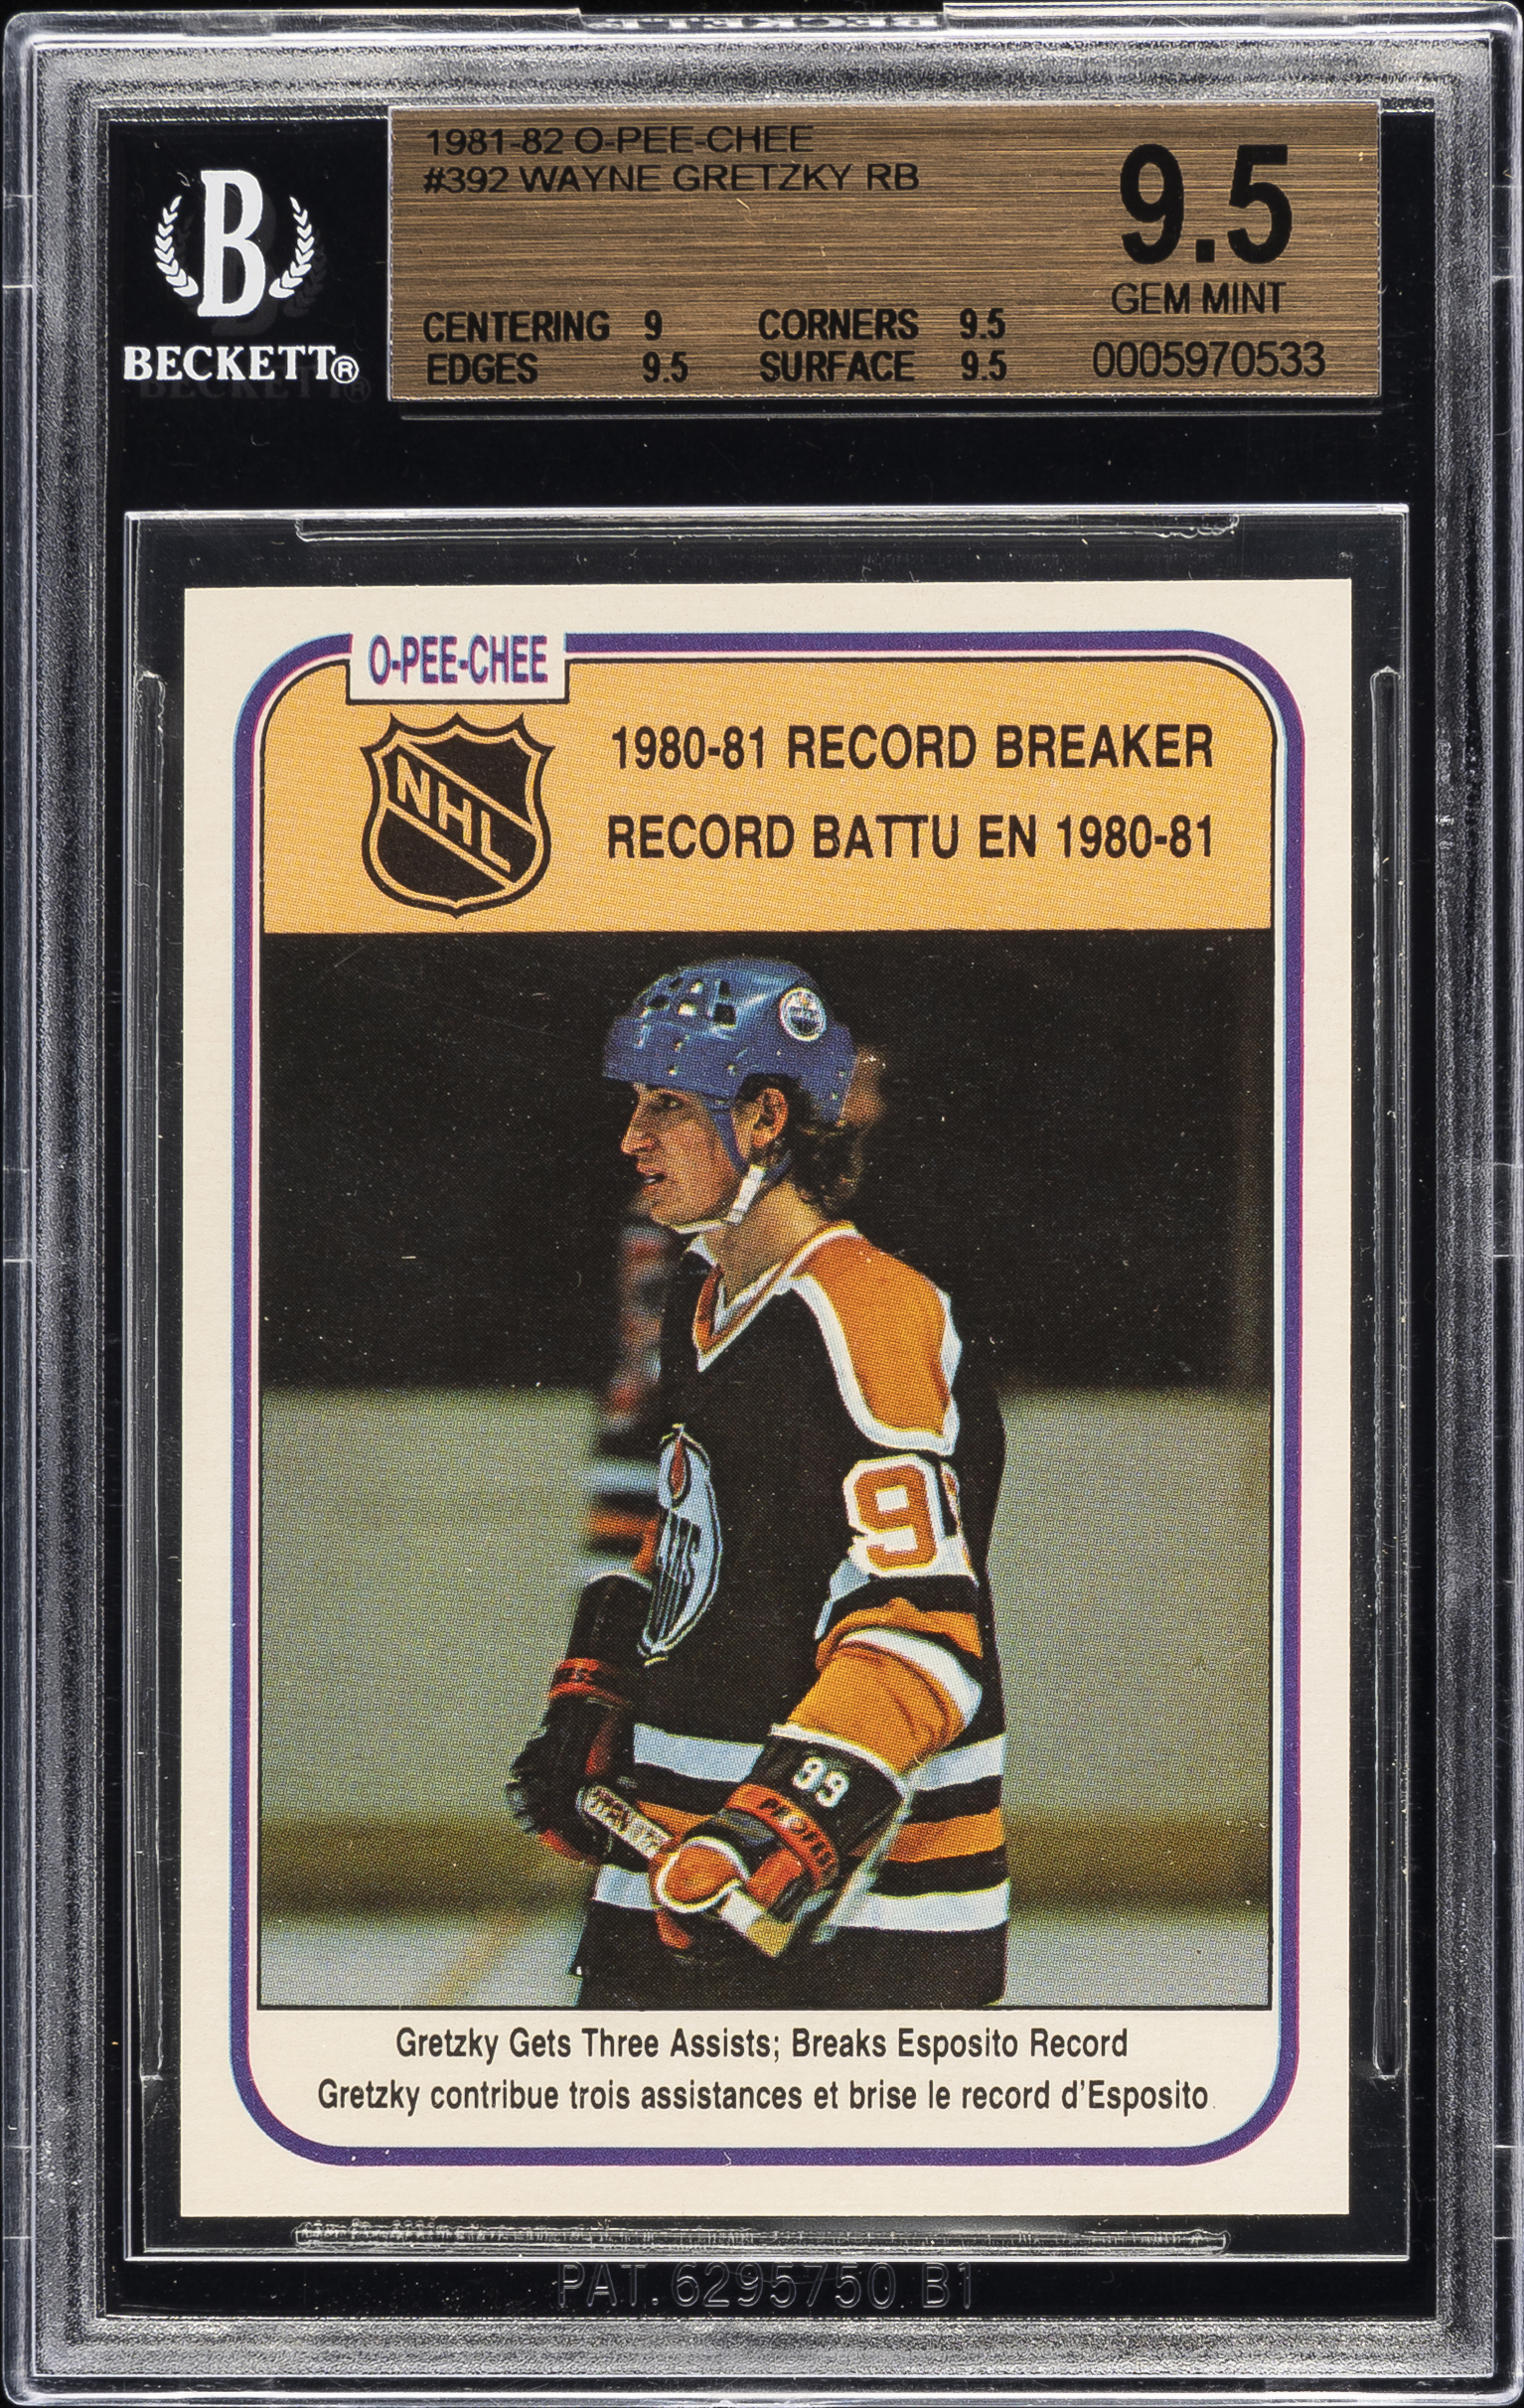 1981-82 Opeechee Record Breaker #392 Wayne Gretzky – BGS GEM MINT 9.5